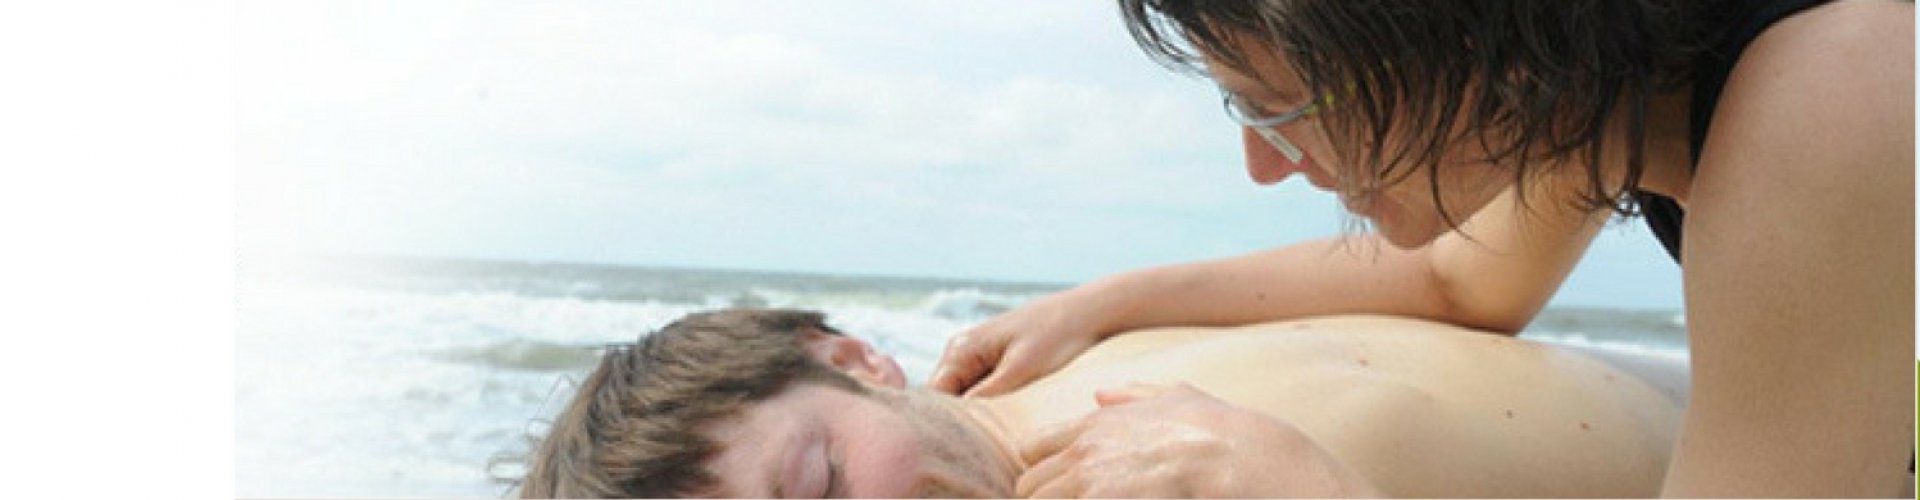 bewustwordings massage nijmegen den haag